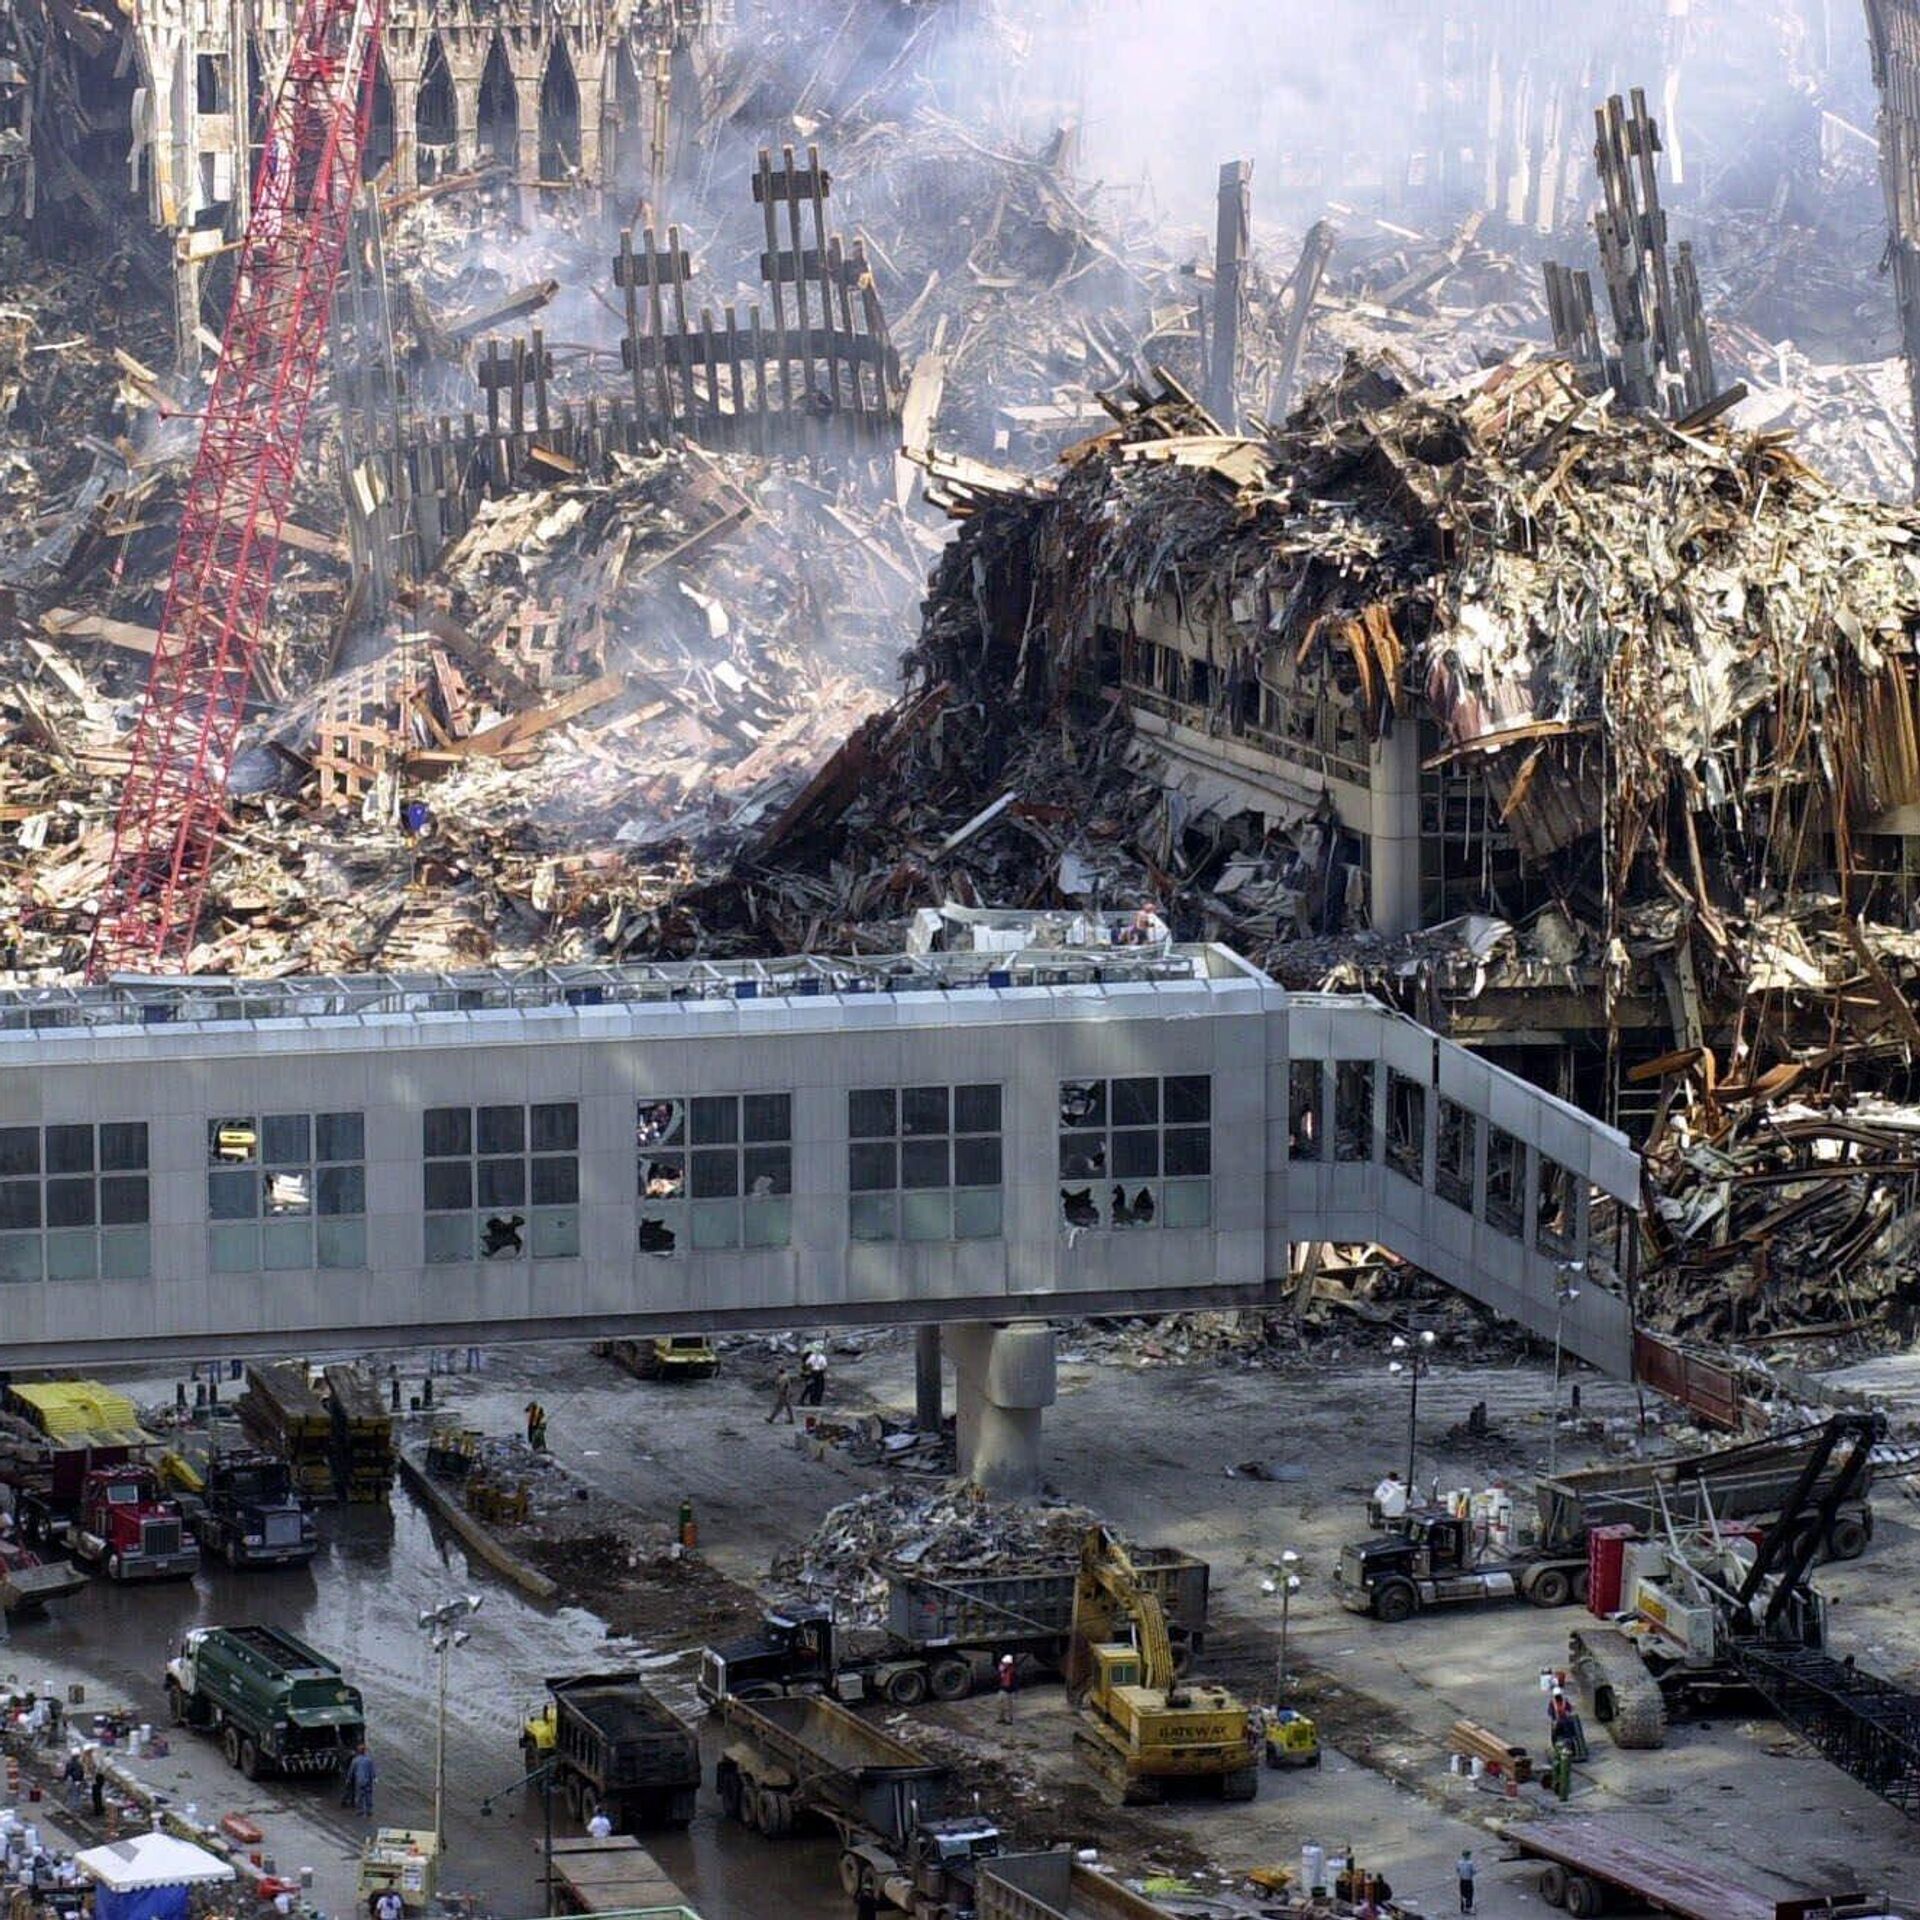 Мир после падения 117. Башни-Близнецы 11 сентября 2001. 11 Сентября 2001 года Пентагон. ВТЦ Нью-Йорк башни Близнецы. Атака на башни Близнецы 11 сентября.